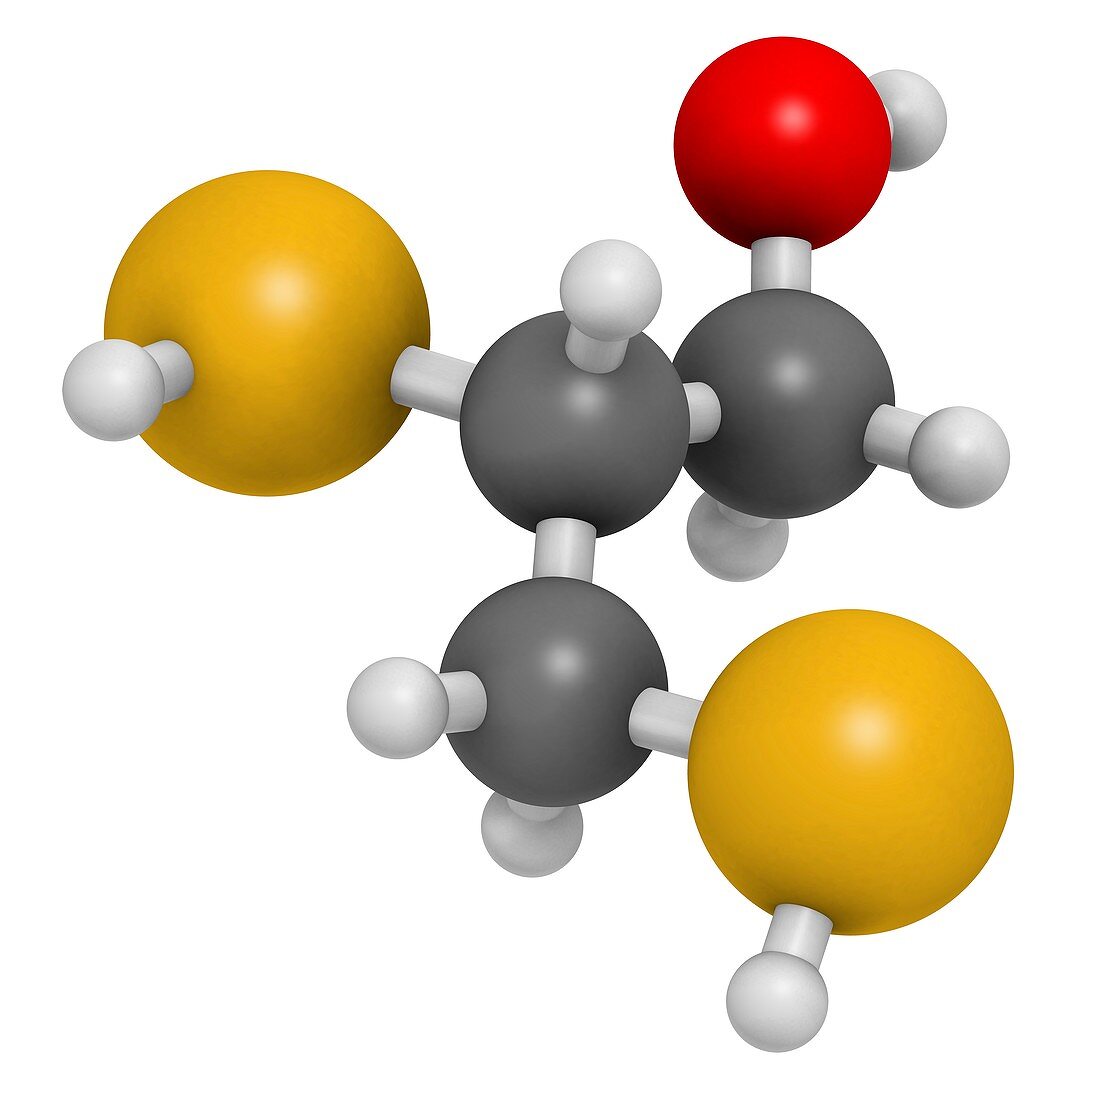 Dimercaprol metal poisoning antidote